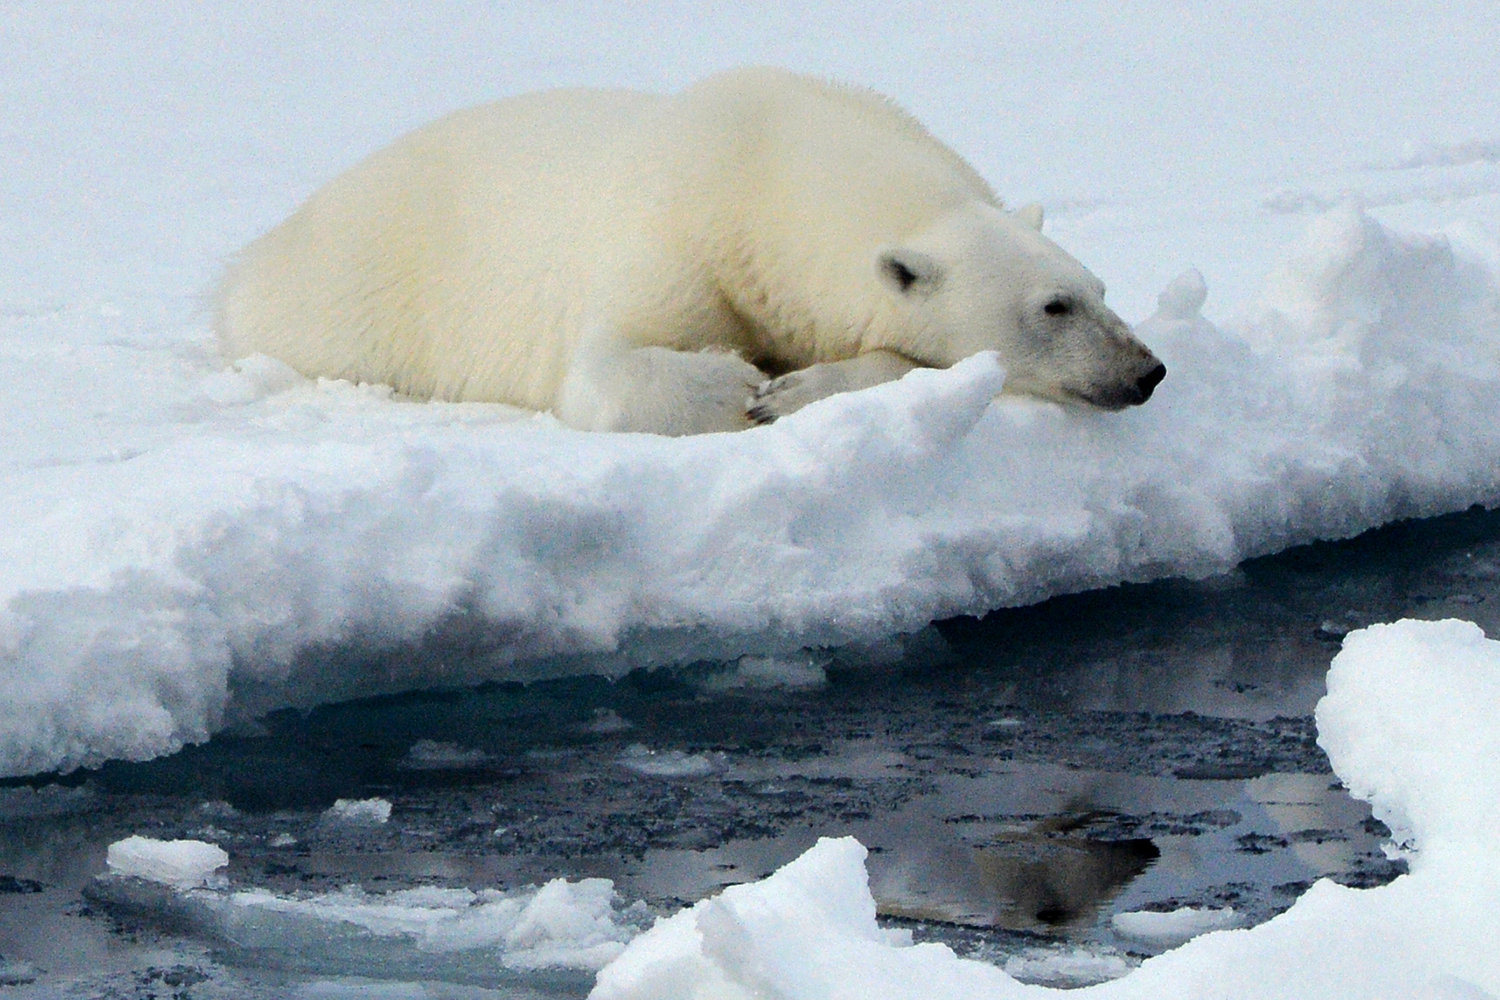 A polar bear on an ice flow in the Arctic Ocean